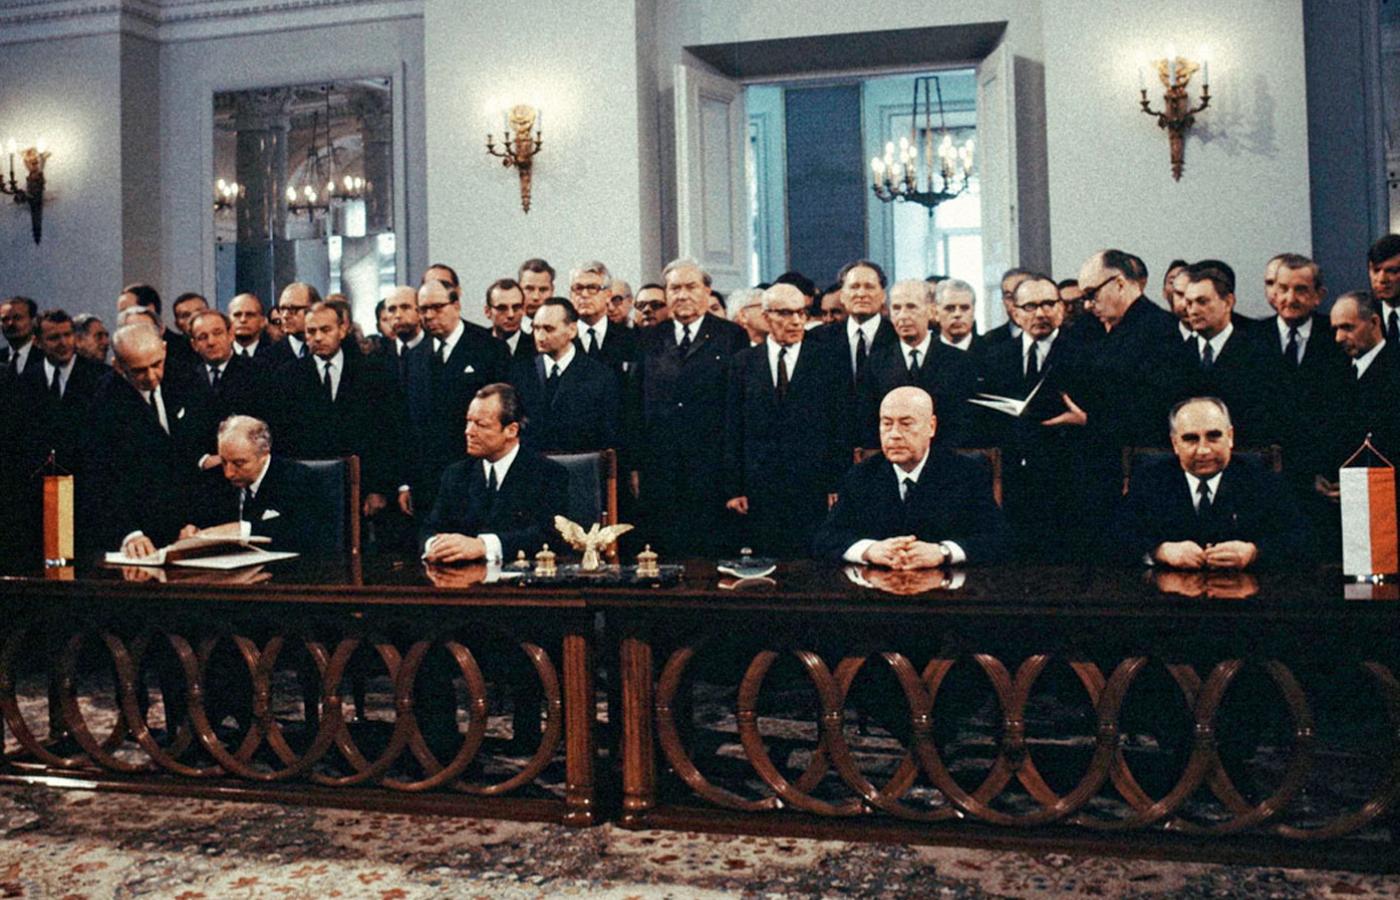 Podpisanie układu między PRL i RFN, w którym państwo zachodnioniemieckie m.in. uznało granicę na Odrze i Nysie (kanclerz Willy Brandt – drugi od lewej, premier Józef Cyrankiewicz – drugi od prawej), Warszawa, 7 grudnia 1970 r.